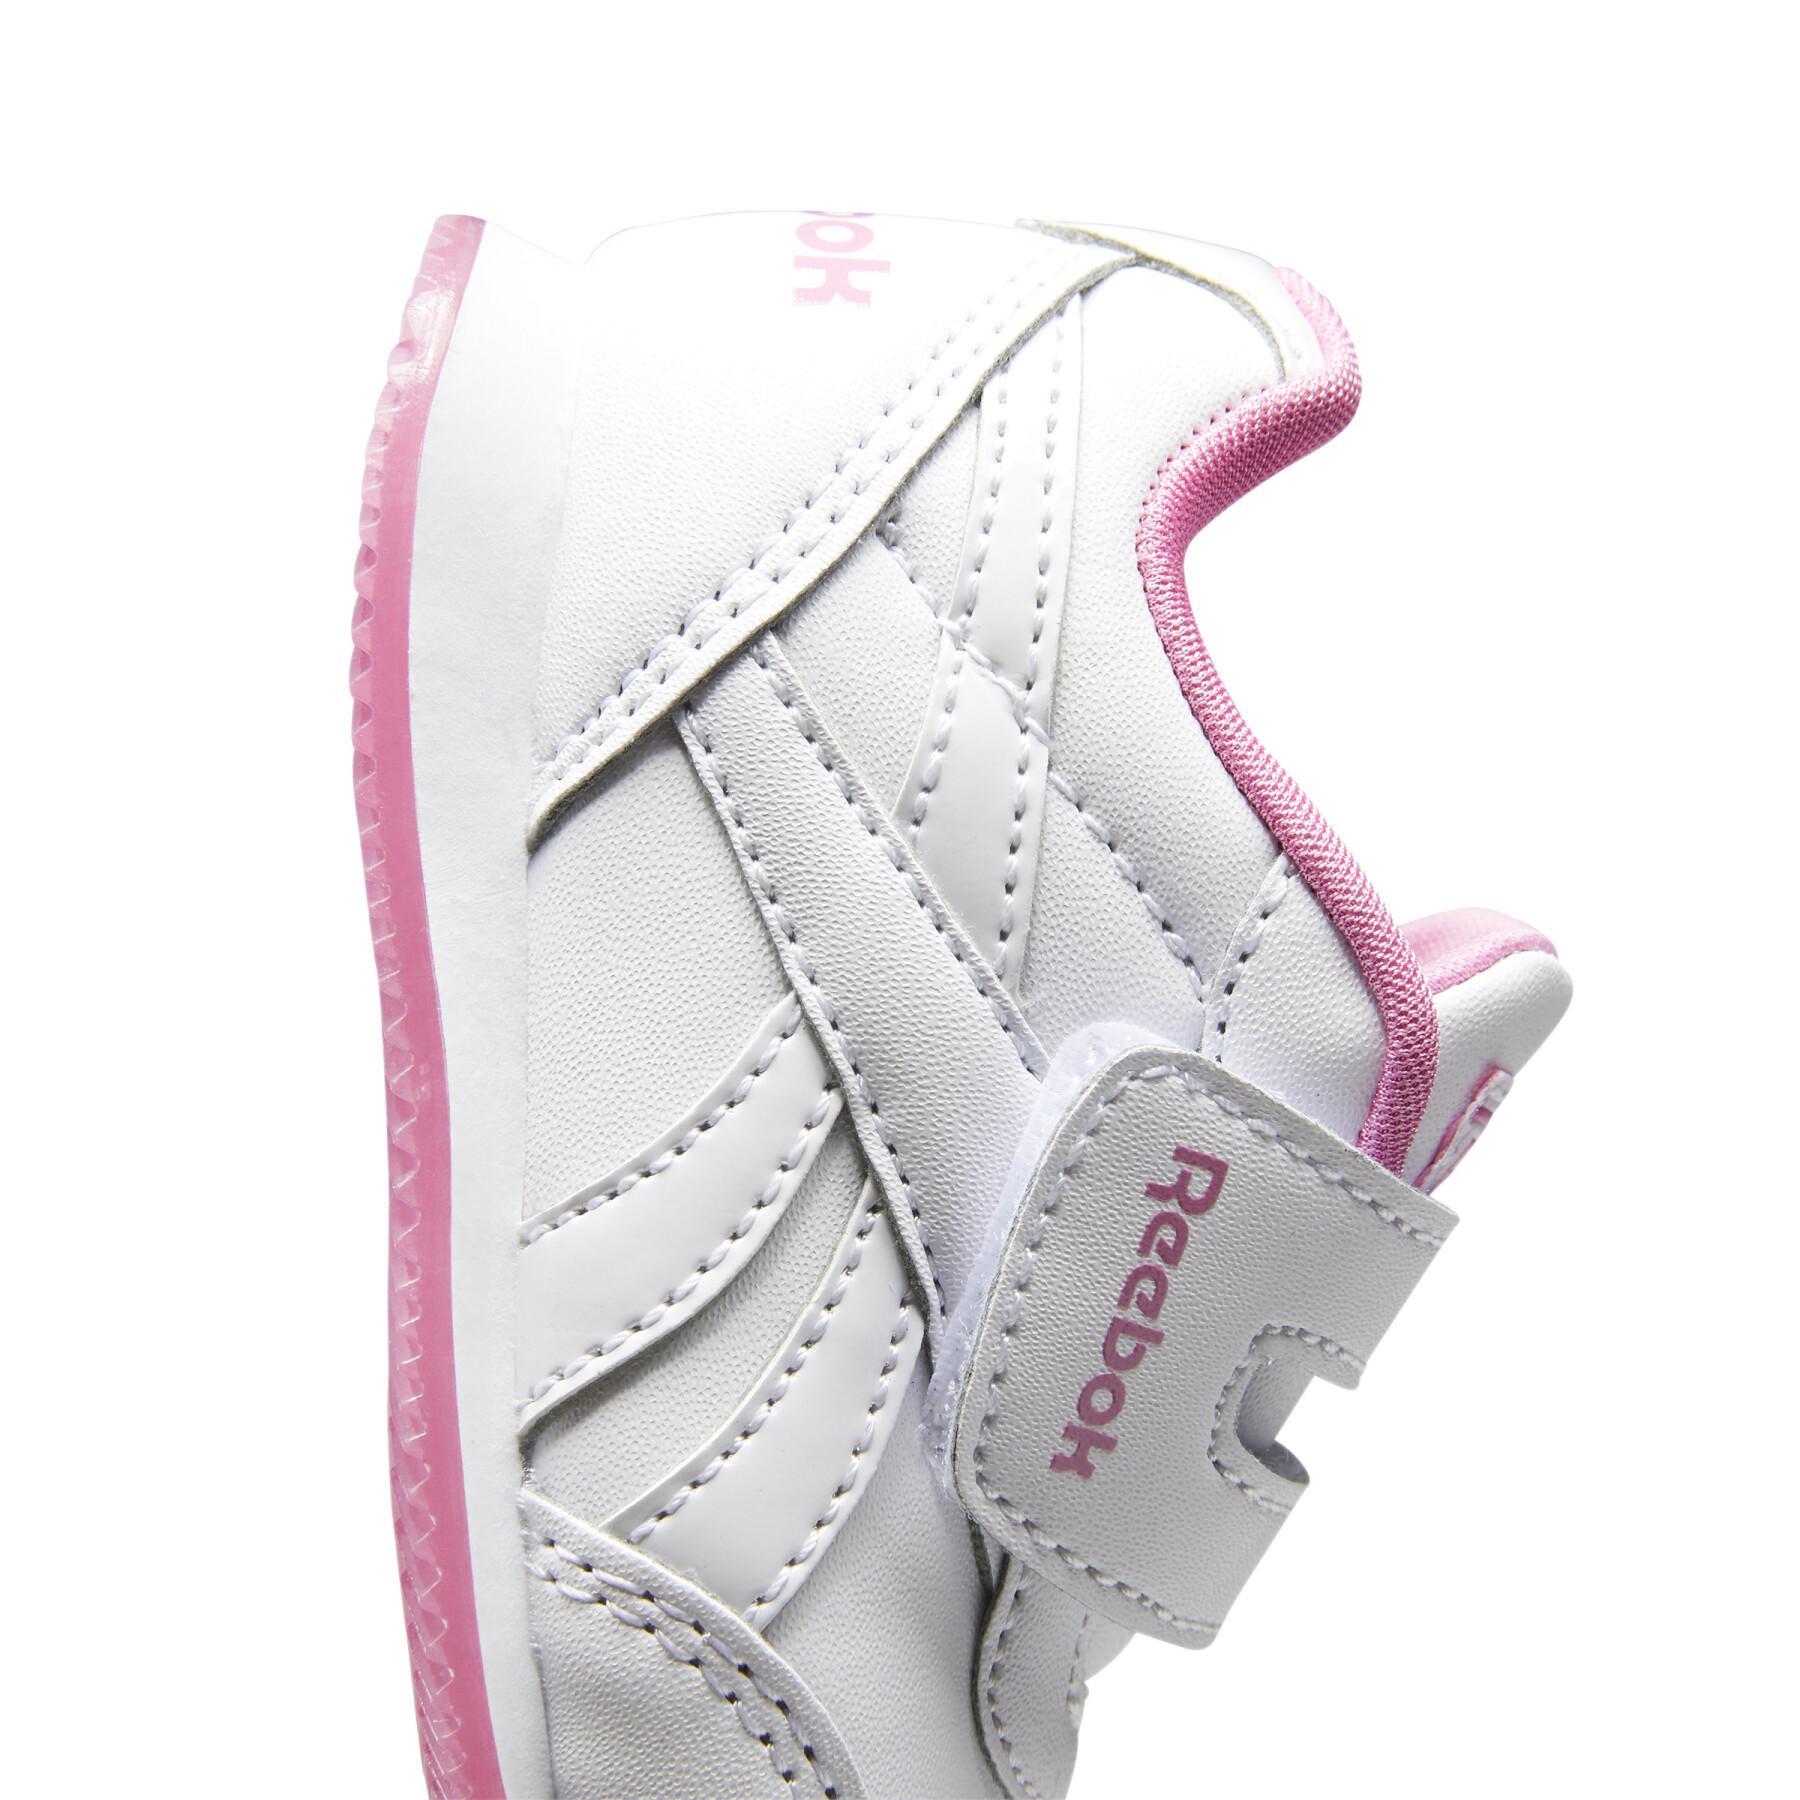 Reebok Jogger 2.0 Women's Kid Sneakers